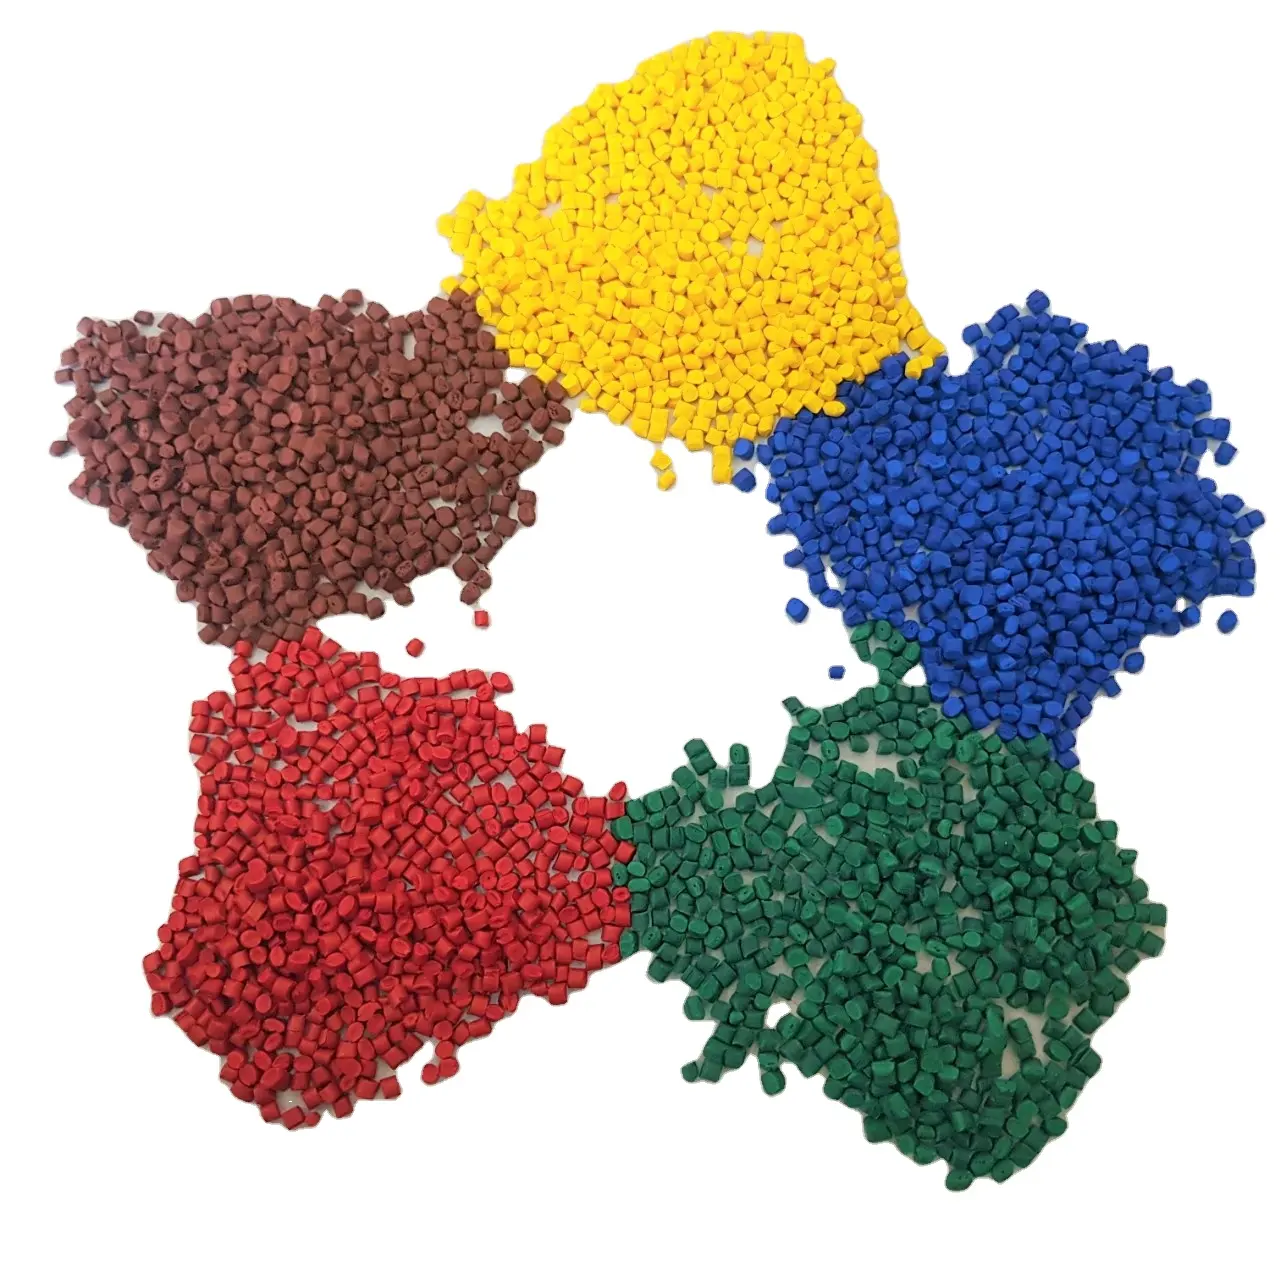 Échantillons sans tubes pour granulés de pigments plastiques, pour PP, PE, couleurs variées et ombrage, pièces